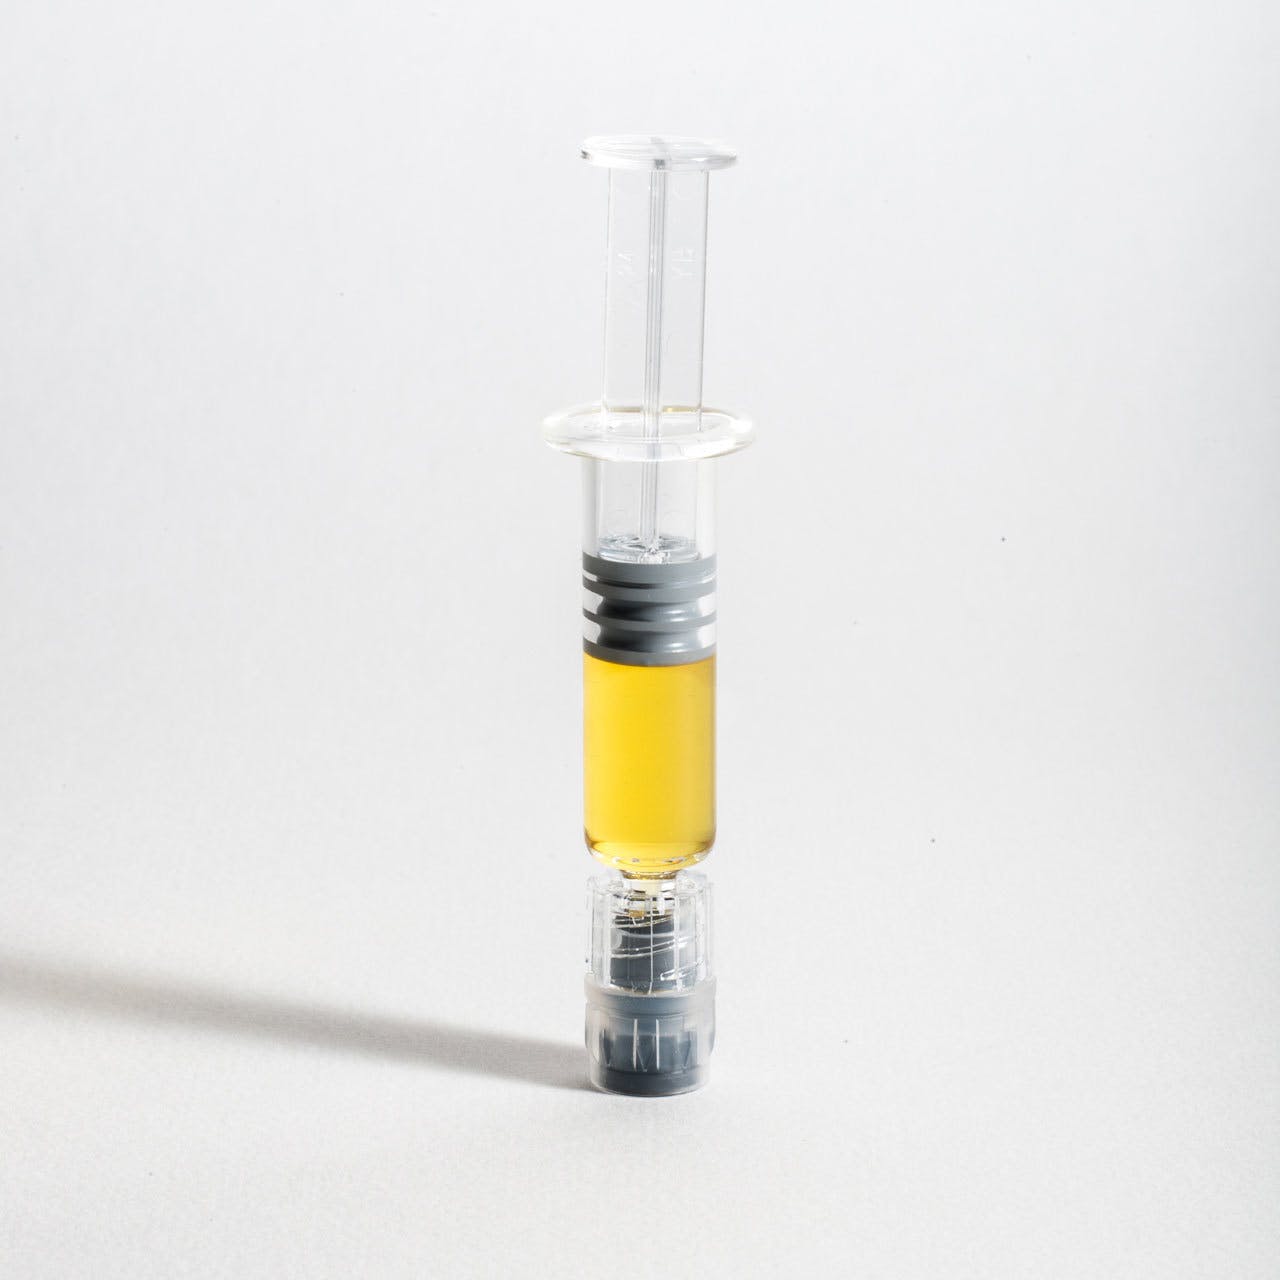 Eureka - Syringe 1g - Hybrid